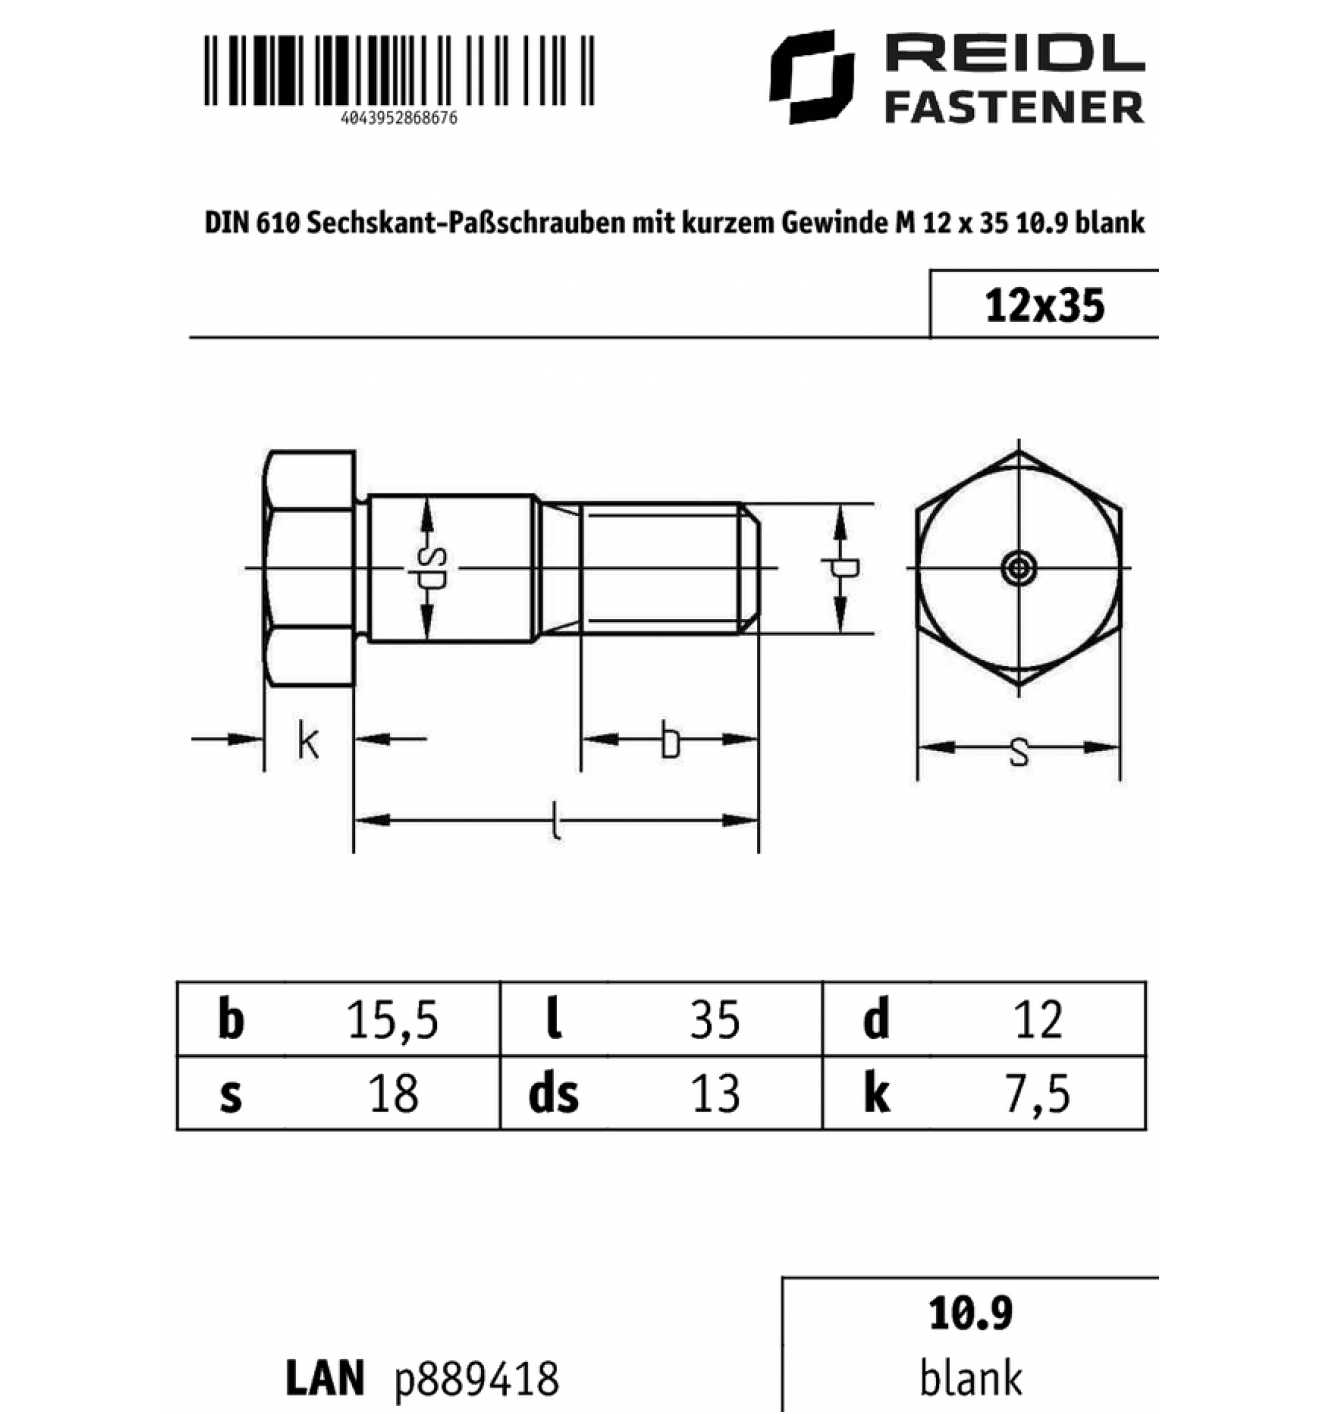 Sechskant-Passschrauben mit kurzem Gewindezapfen DIN 610 10.9 Stahl blank 